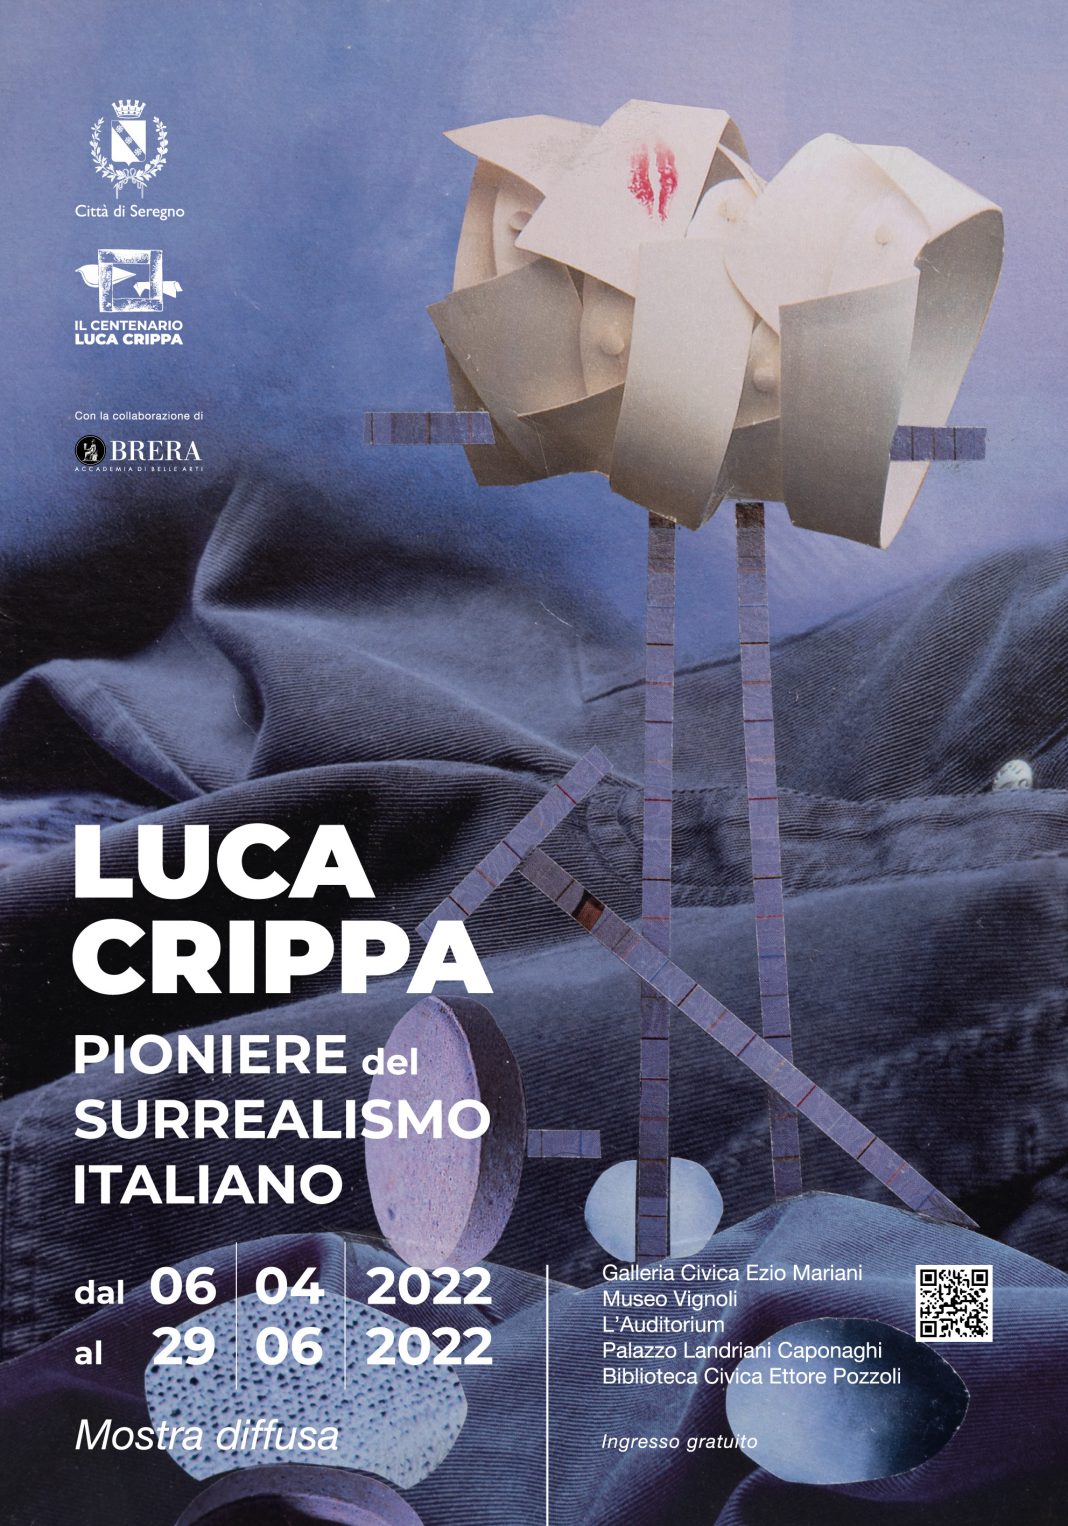 Luca Crippa pioniere del surrealismo italiano. Disegni e grafichehttps://www.exibart.com/repository/media/formidable/11/img/d6e/Manifesto_70x100_Crippa-1068x1526.jpg